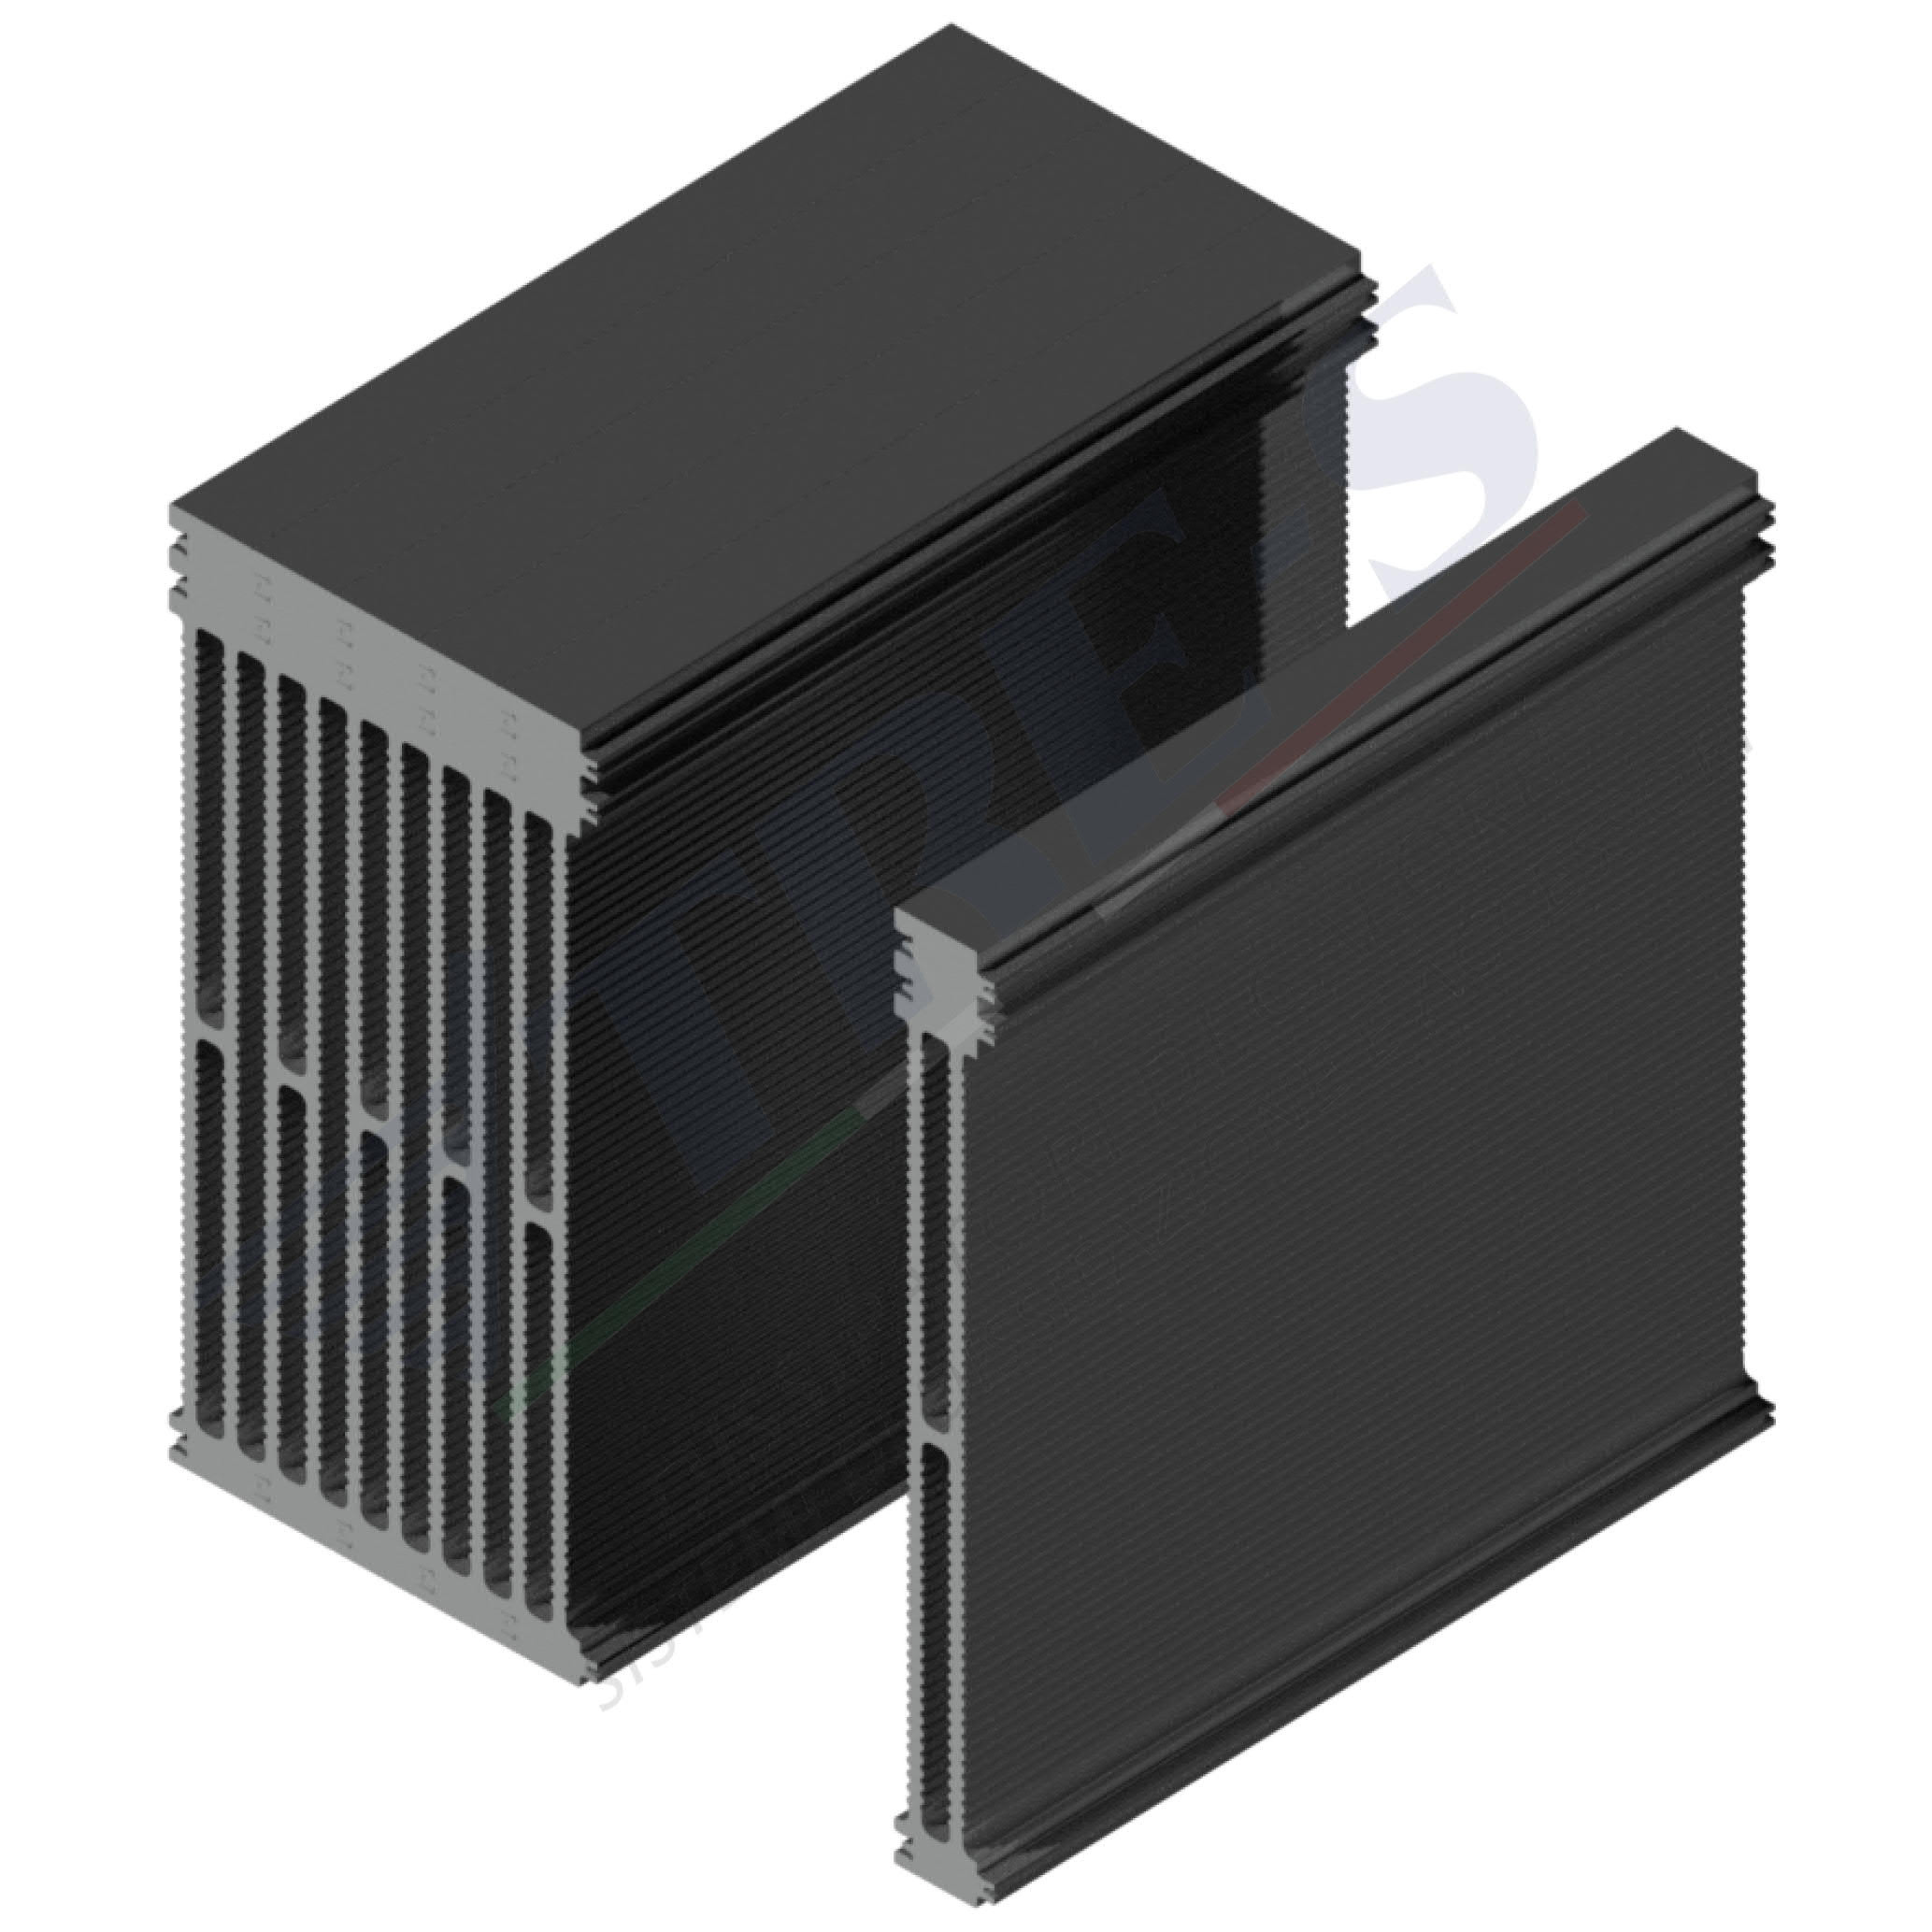 PRI1003D - Embedded heat sinks